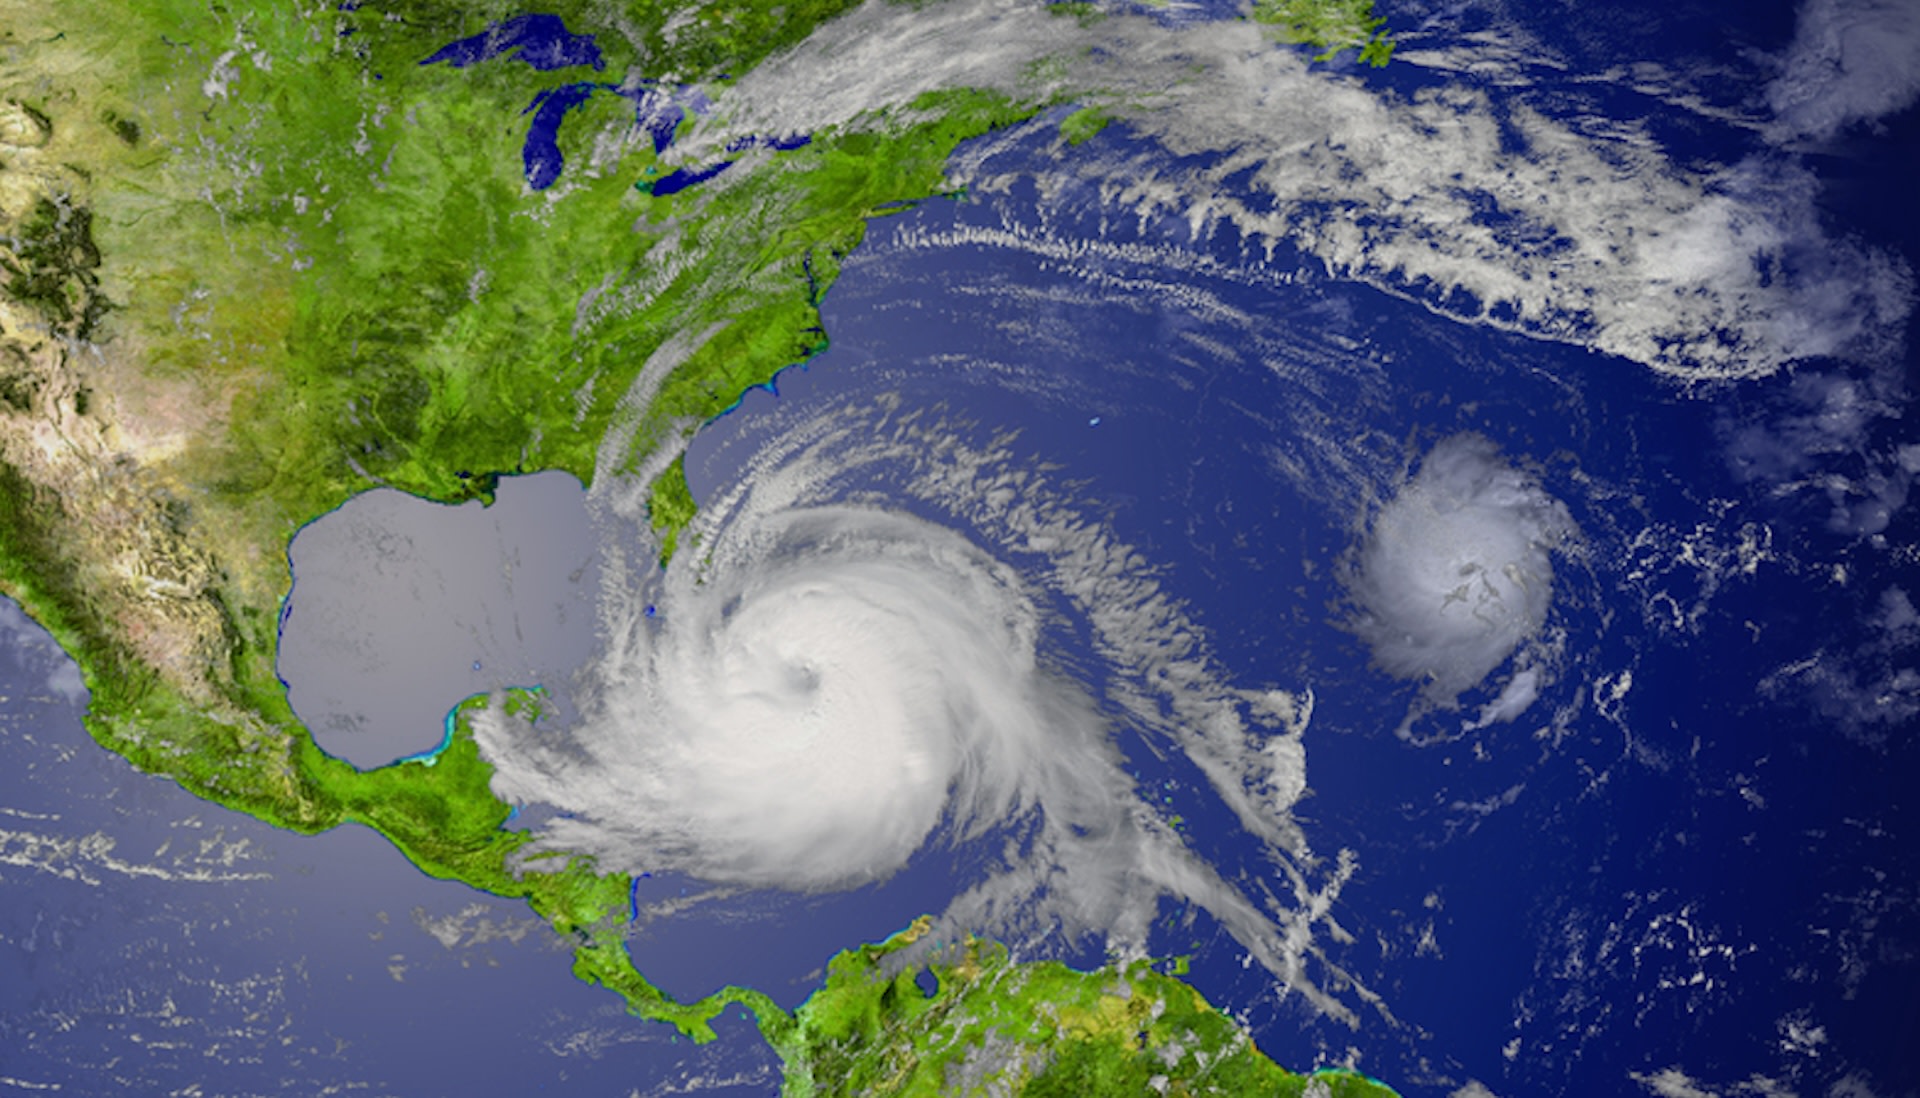 Gli scienziati esprimono preoccupazione per il “riscaldamento minaccioso” nell’Atlantico e per come influenzerà la stagione degli uragani: “Non promette nulla di buono”